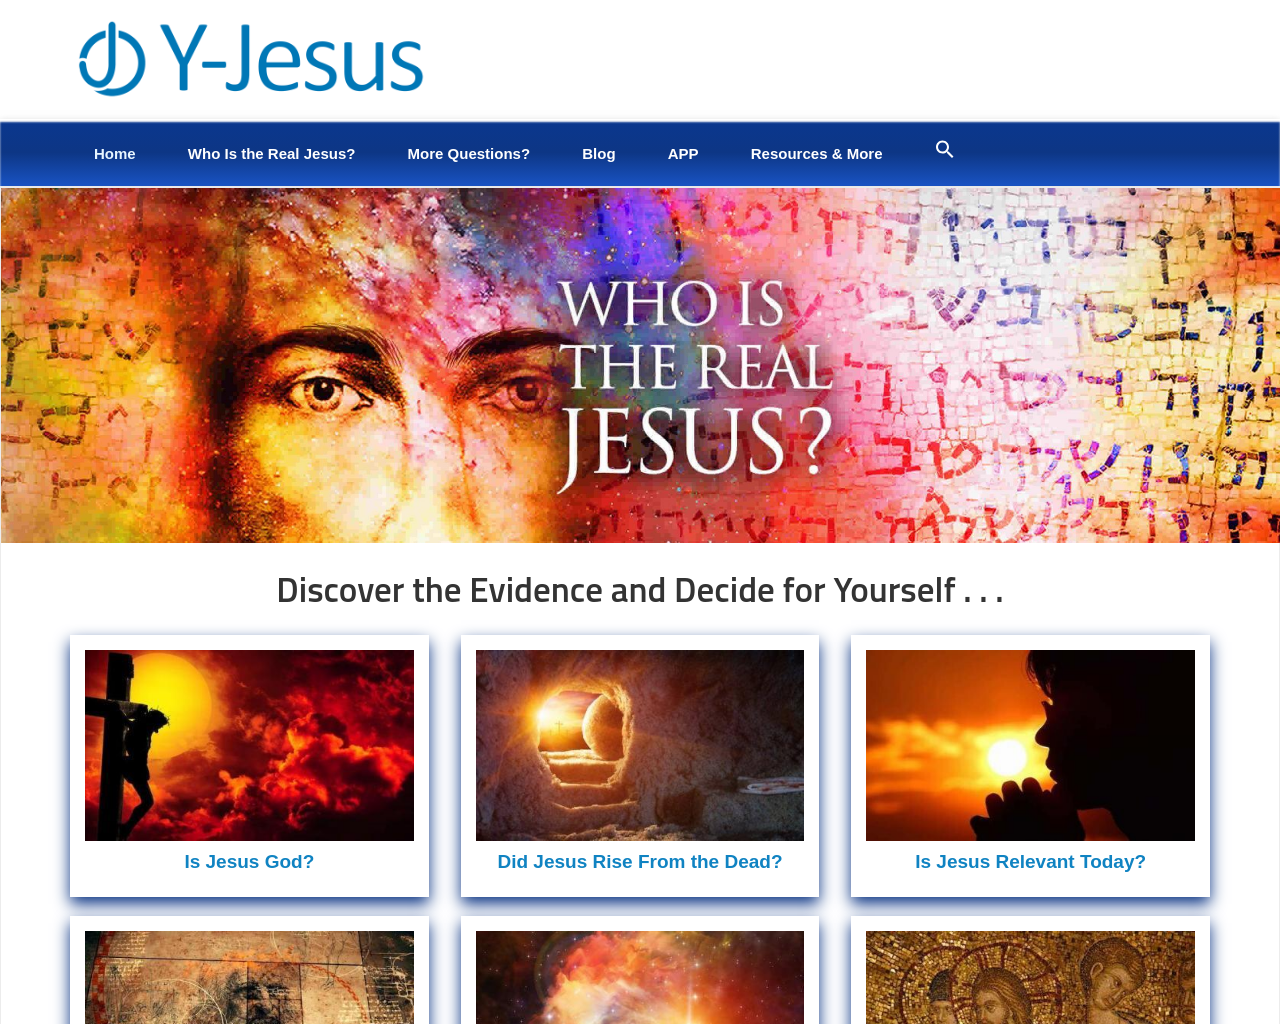 y-jesus.com